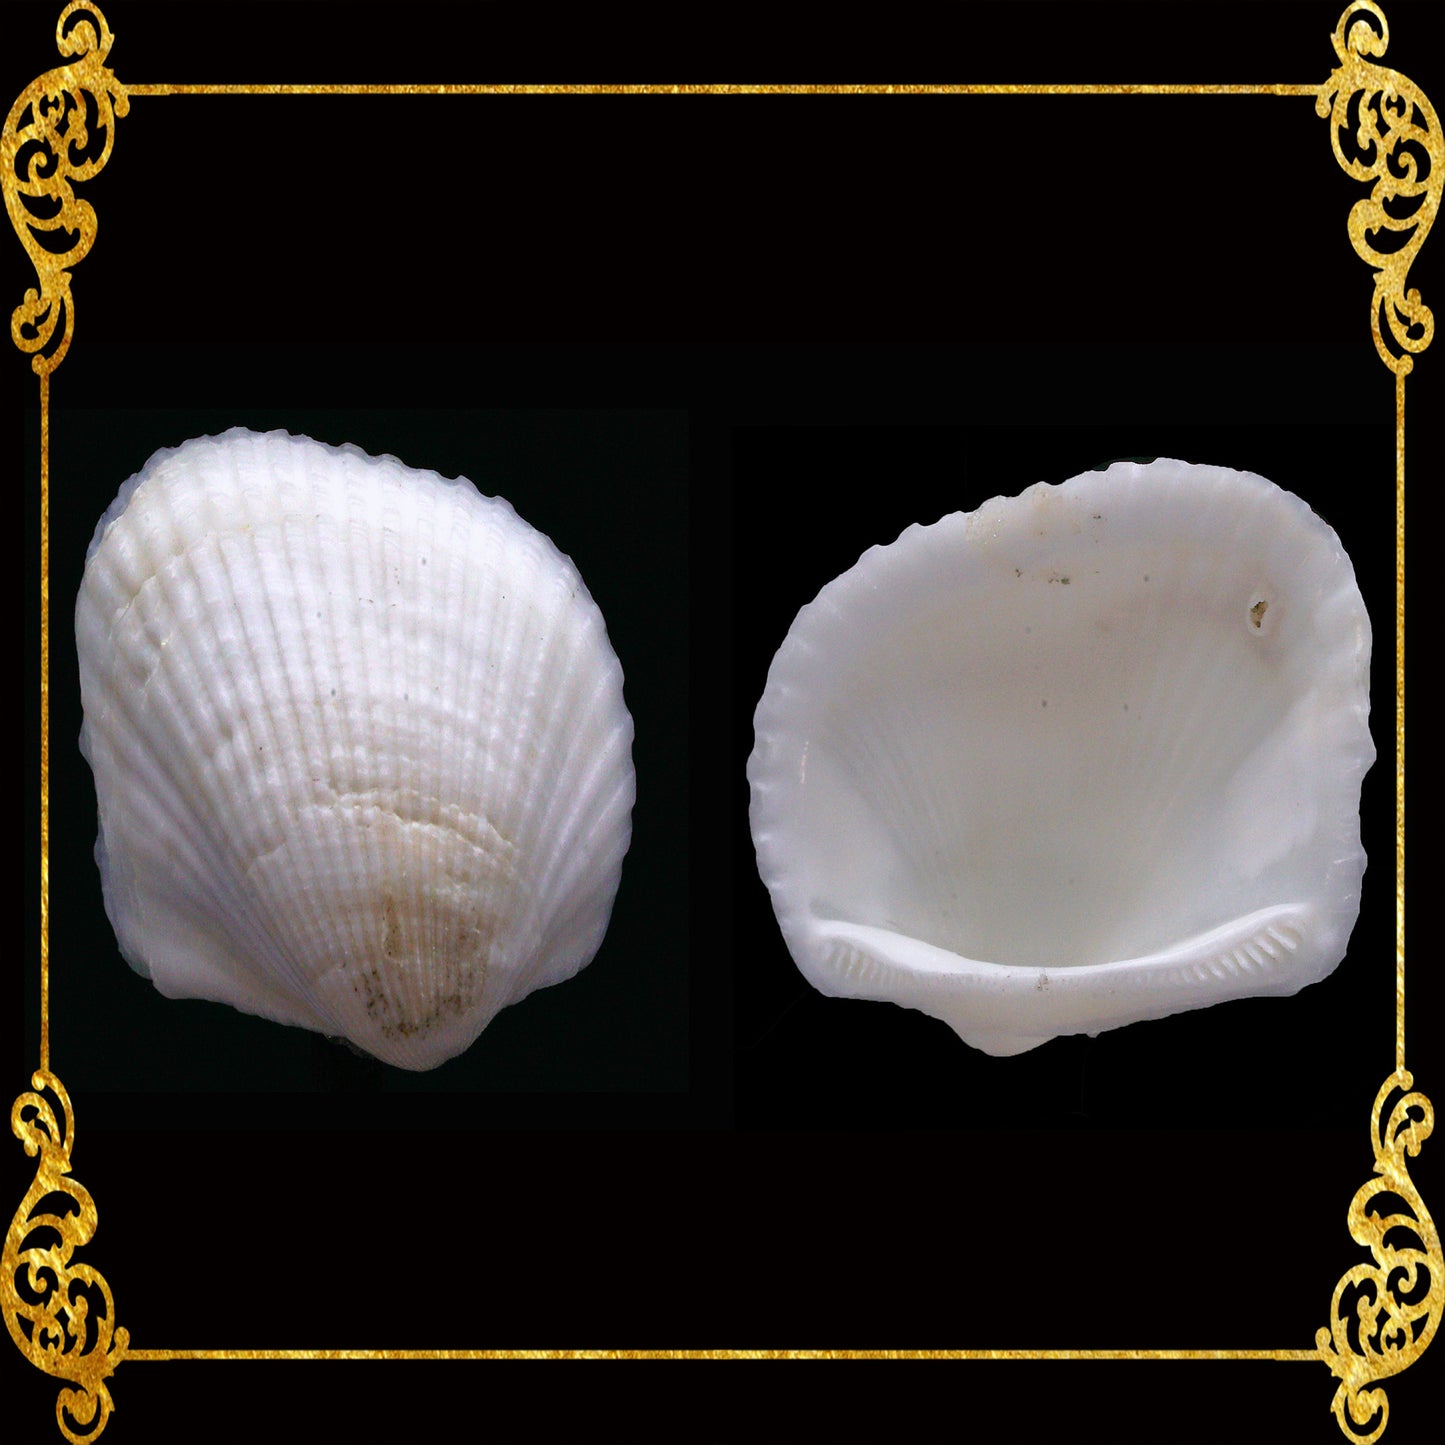 1 Kilo | Batiting | Traverse Ark | Seashells | Sea shells